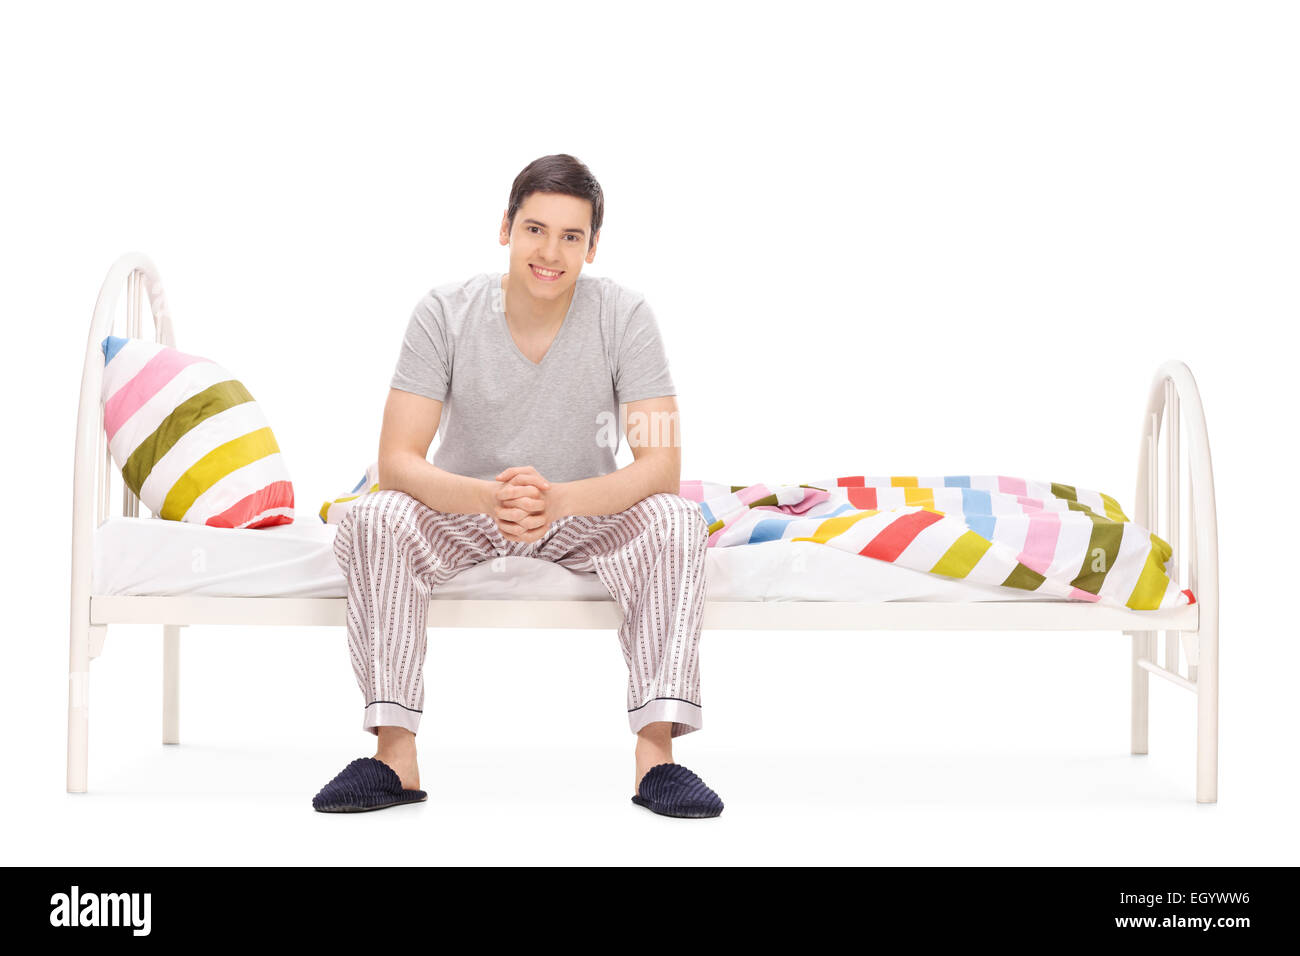 Allegro giovane ragazzo seduto su un letto isolato su sfondo bianco Foto Stock